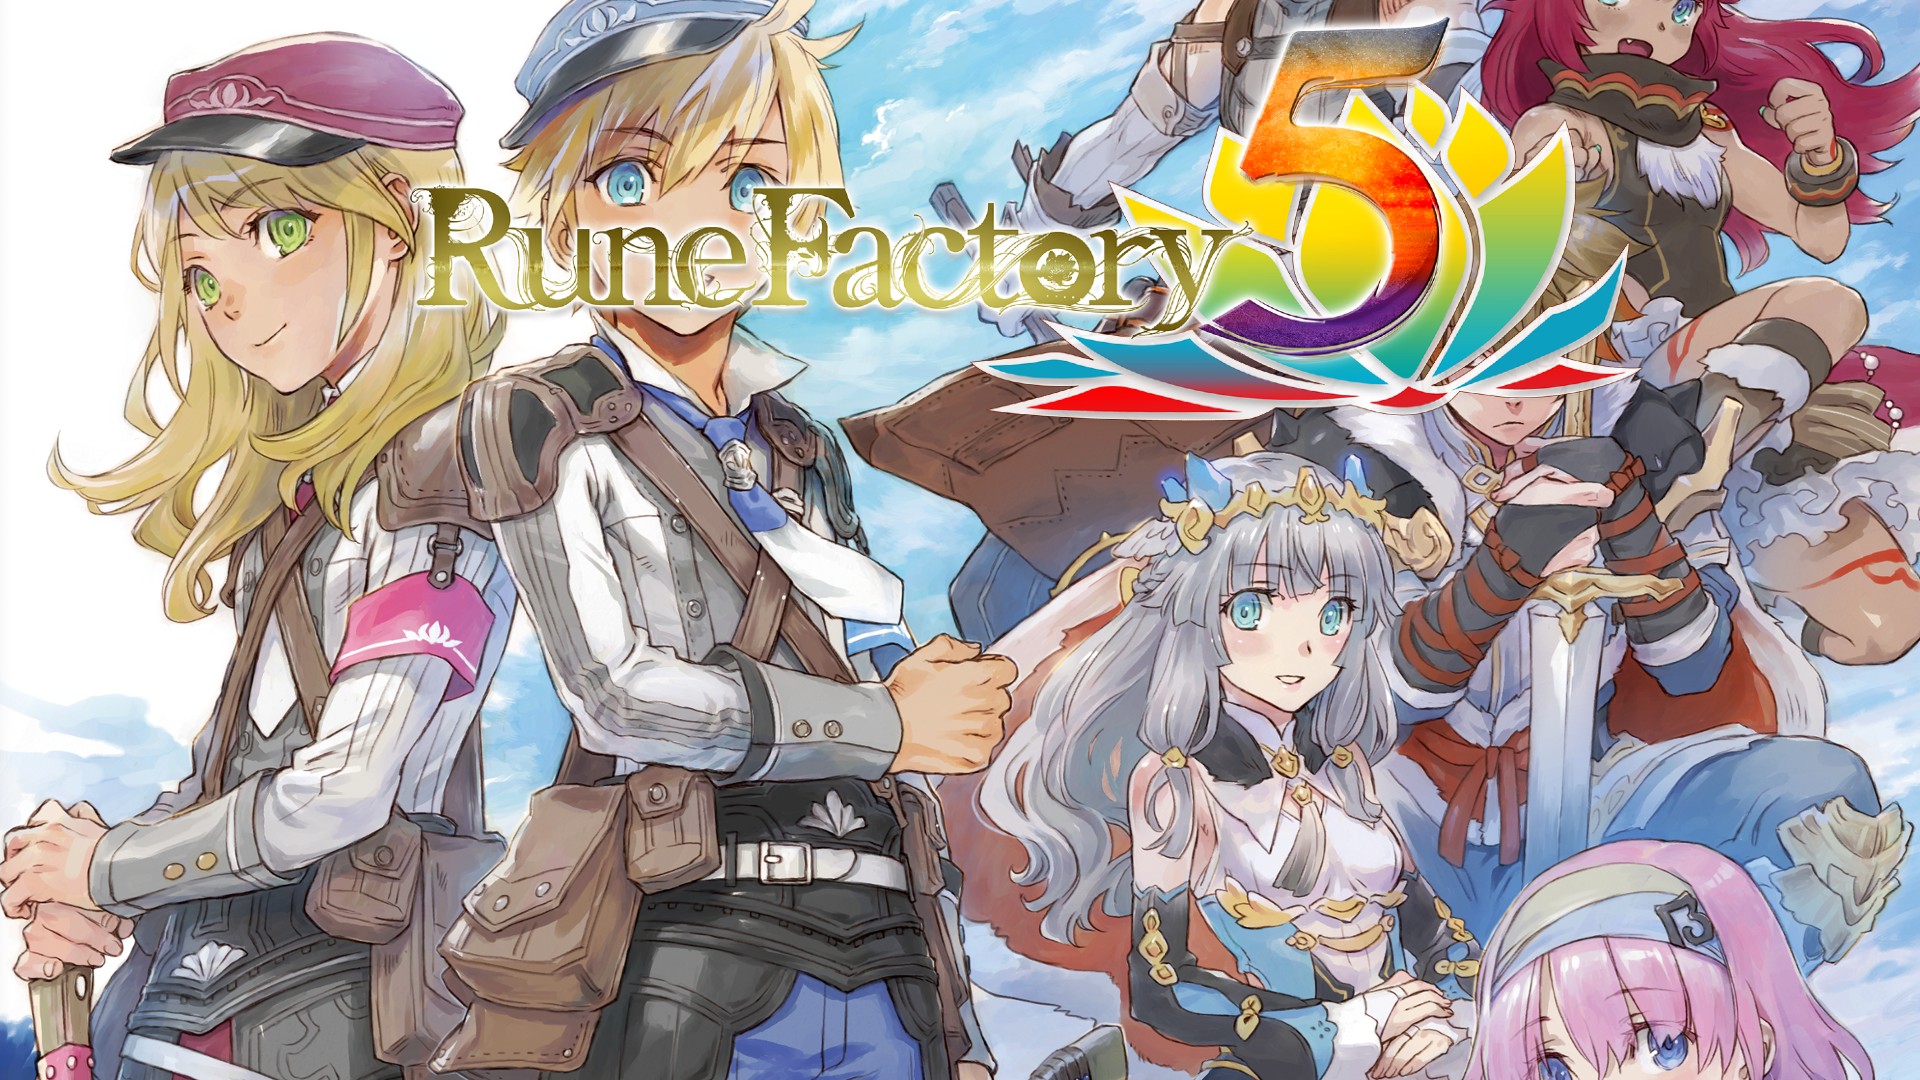 Rune factory